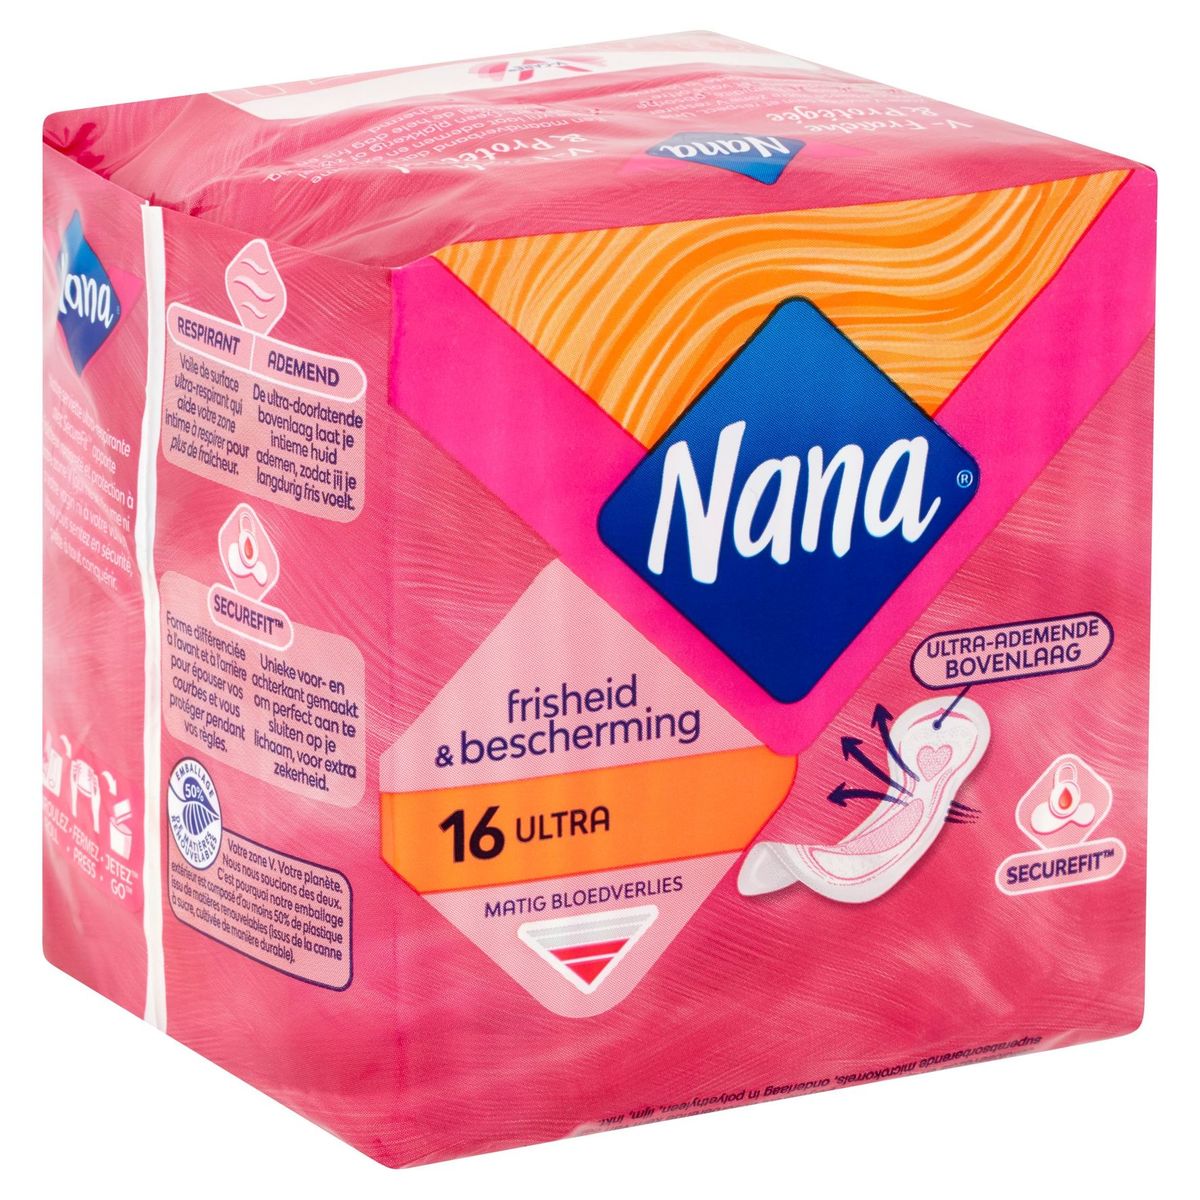 Nana Ultra Régulier / Normal Serviette Hygiénique 16 Pièces